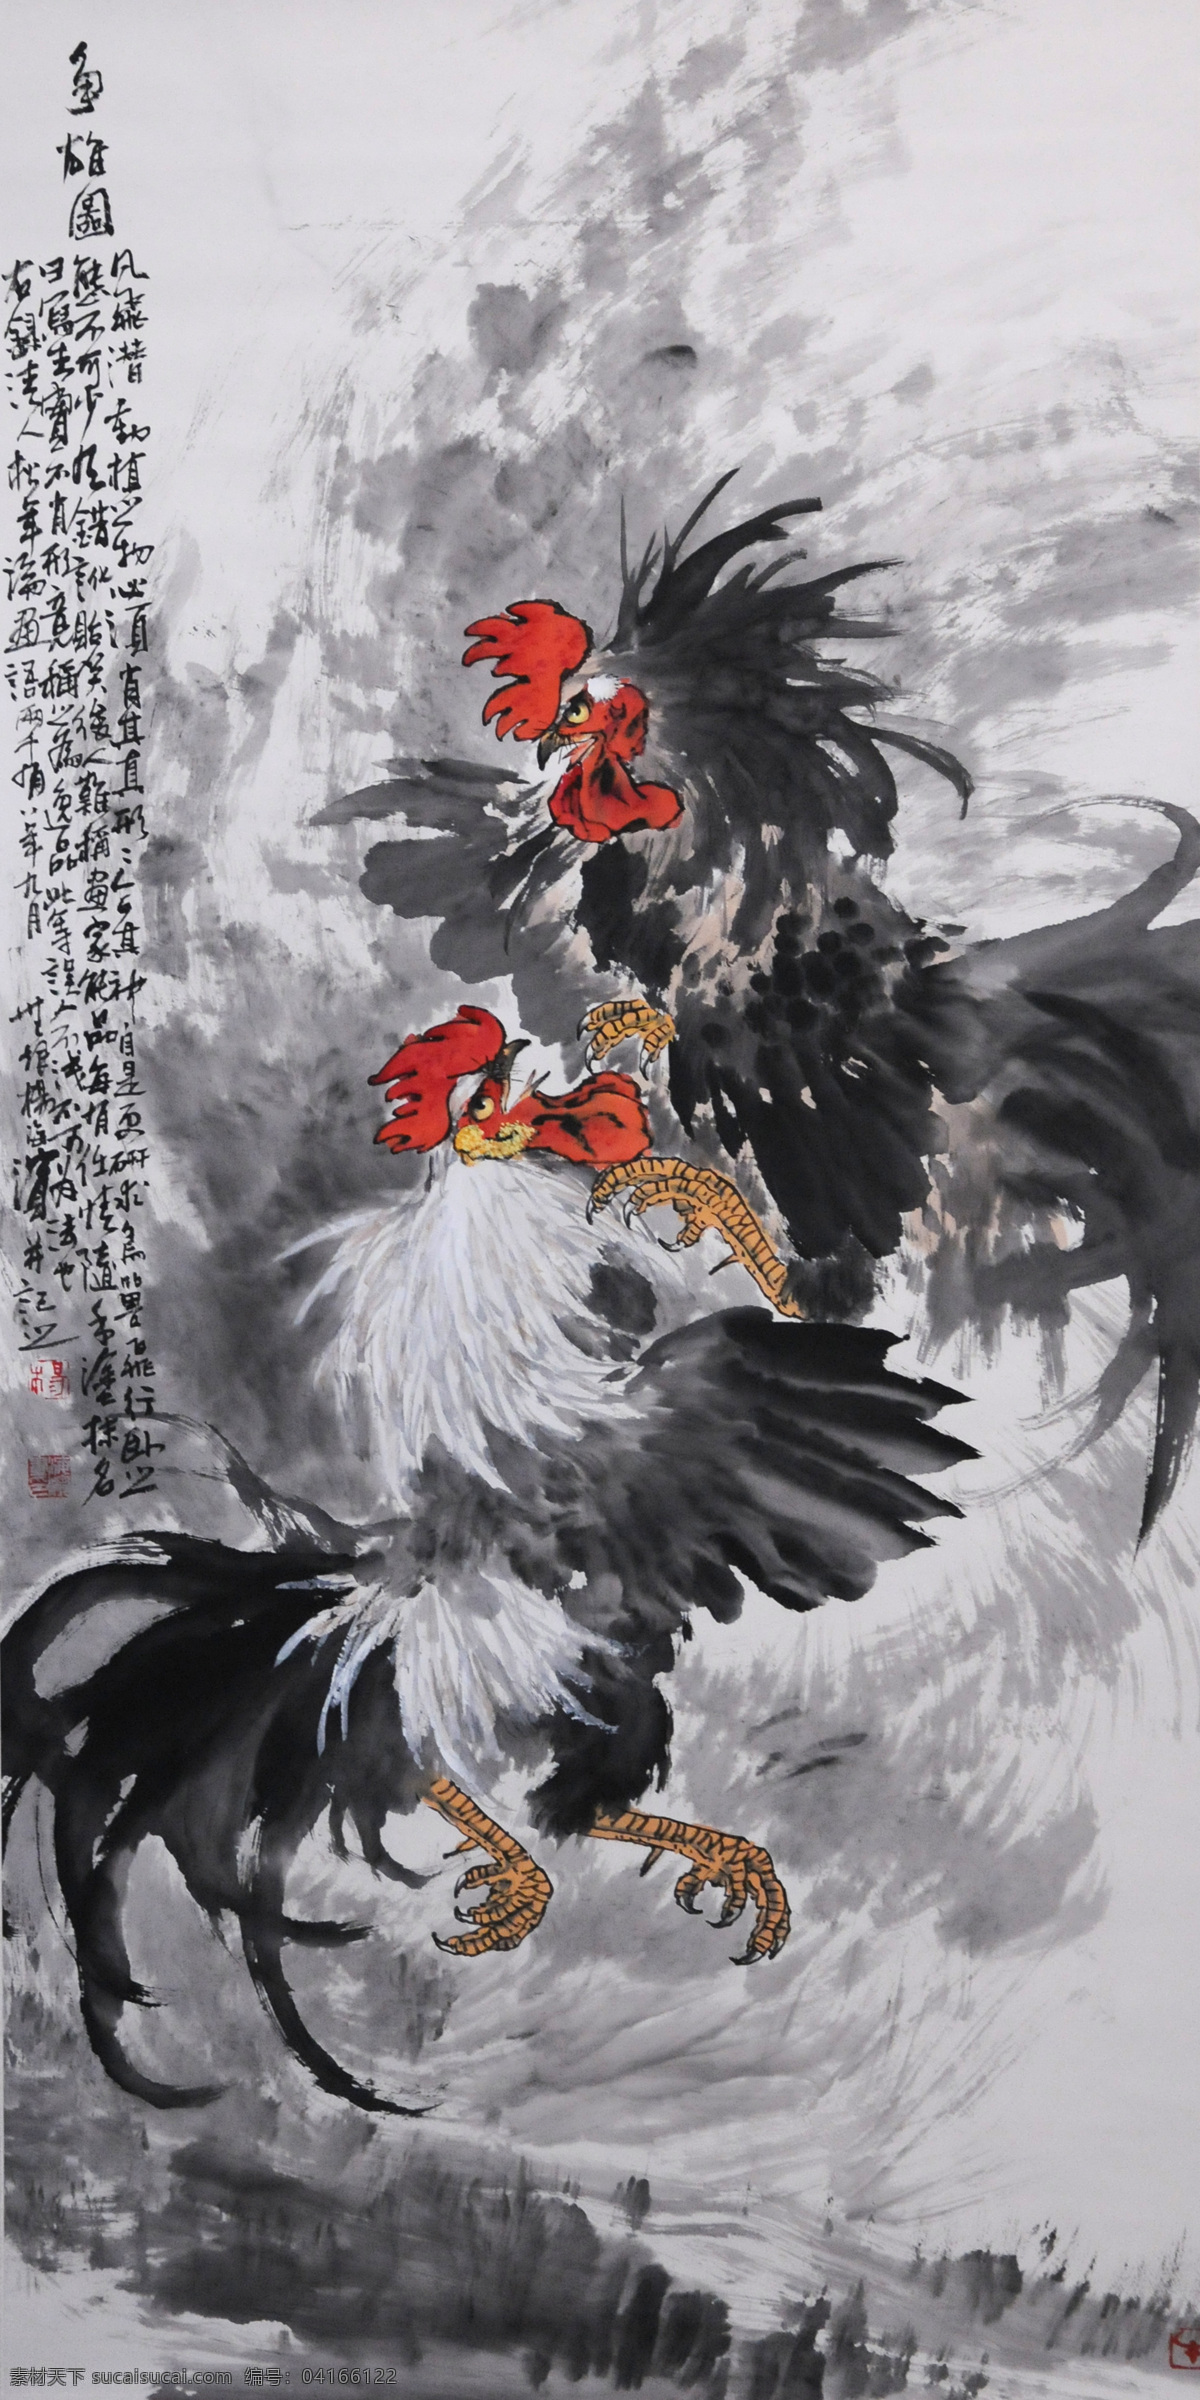 中国画 争 雄图 大吉大利 动物 国粹 花鸟画 水墨画 雄鸡 斗鸡 双吉 写意画 装饰素材 无框画